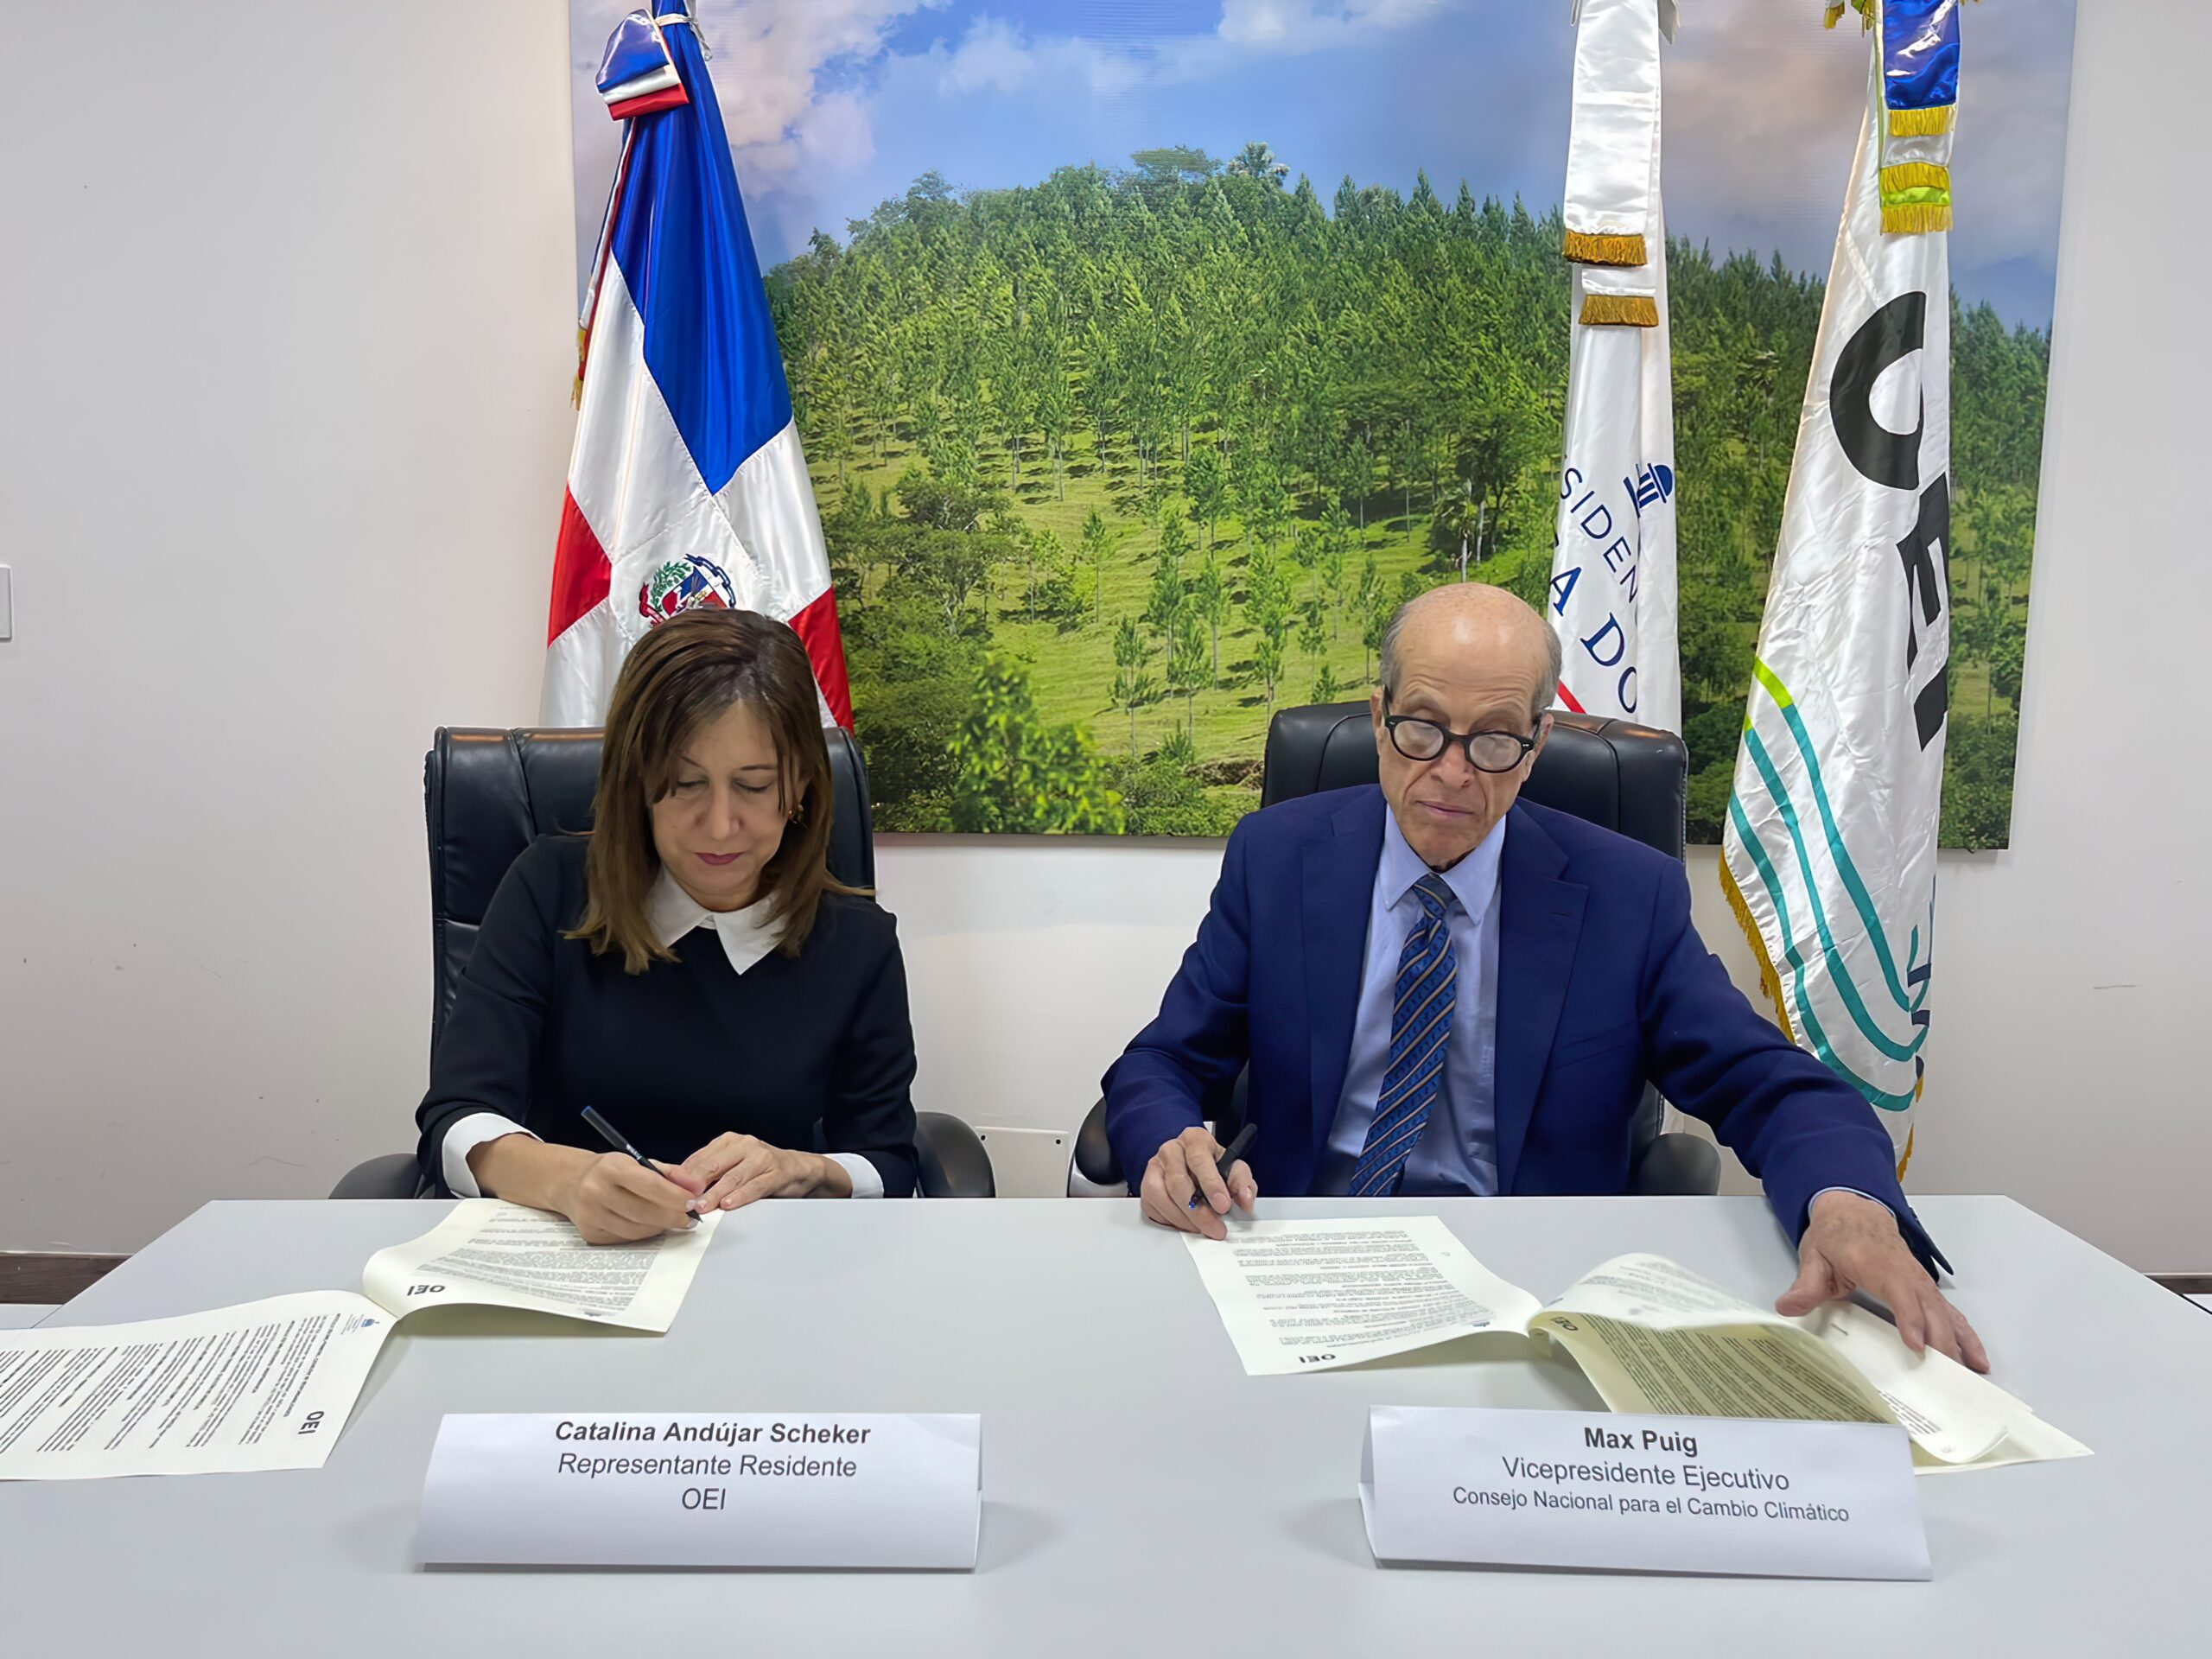 Cambio Climático firma acuerdo para fortalecer educación climática en RD